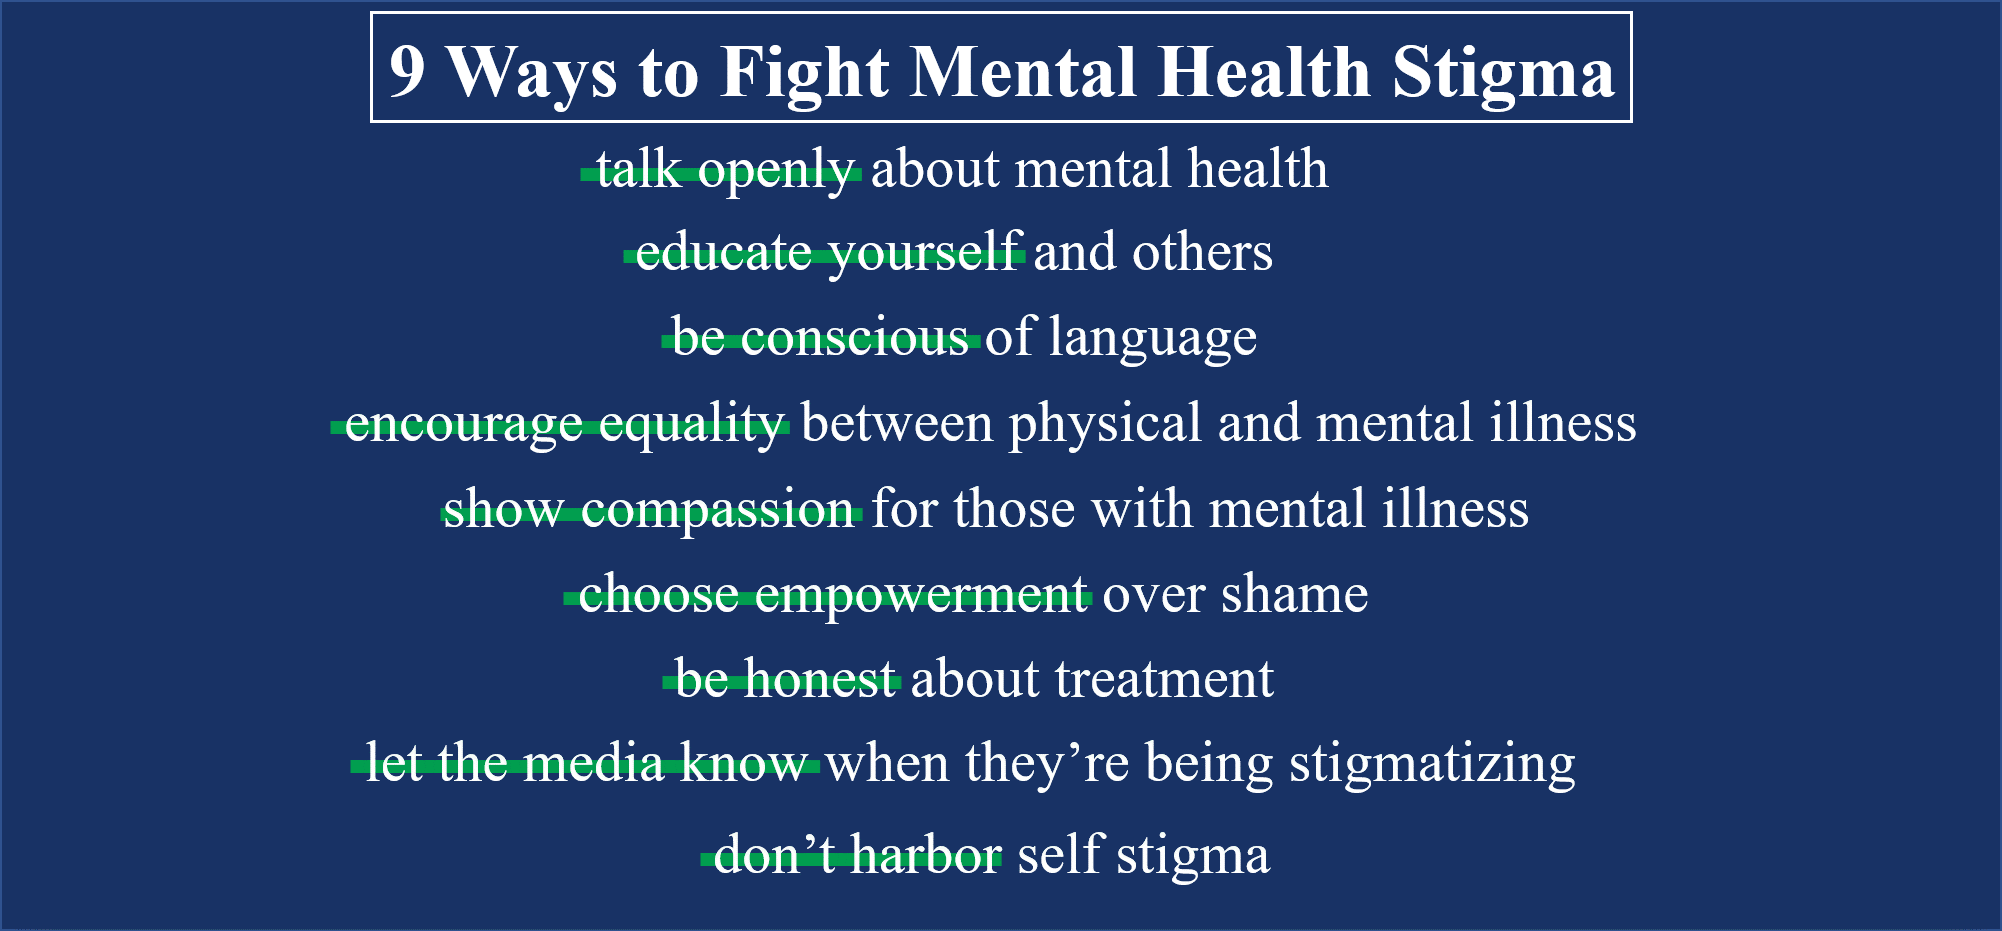 9 ways...stigma